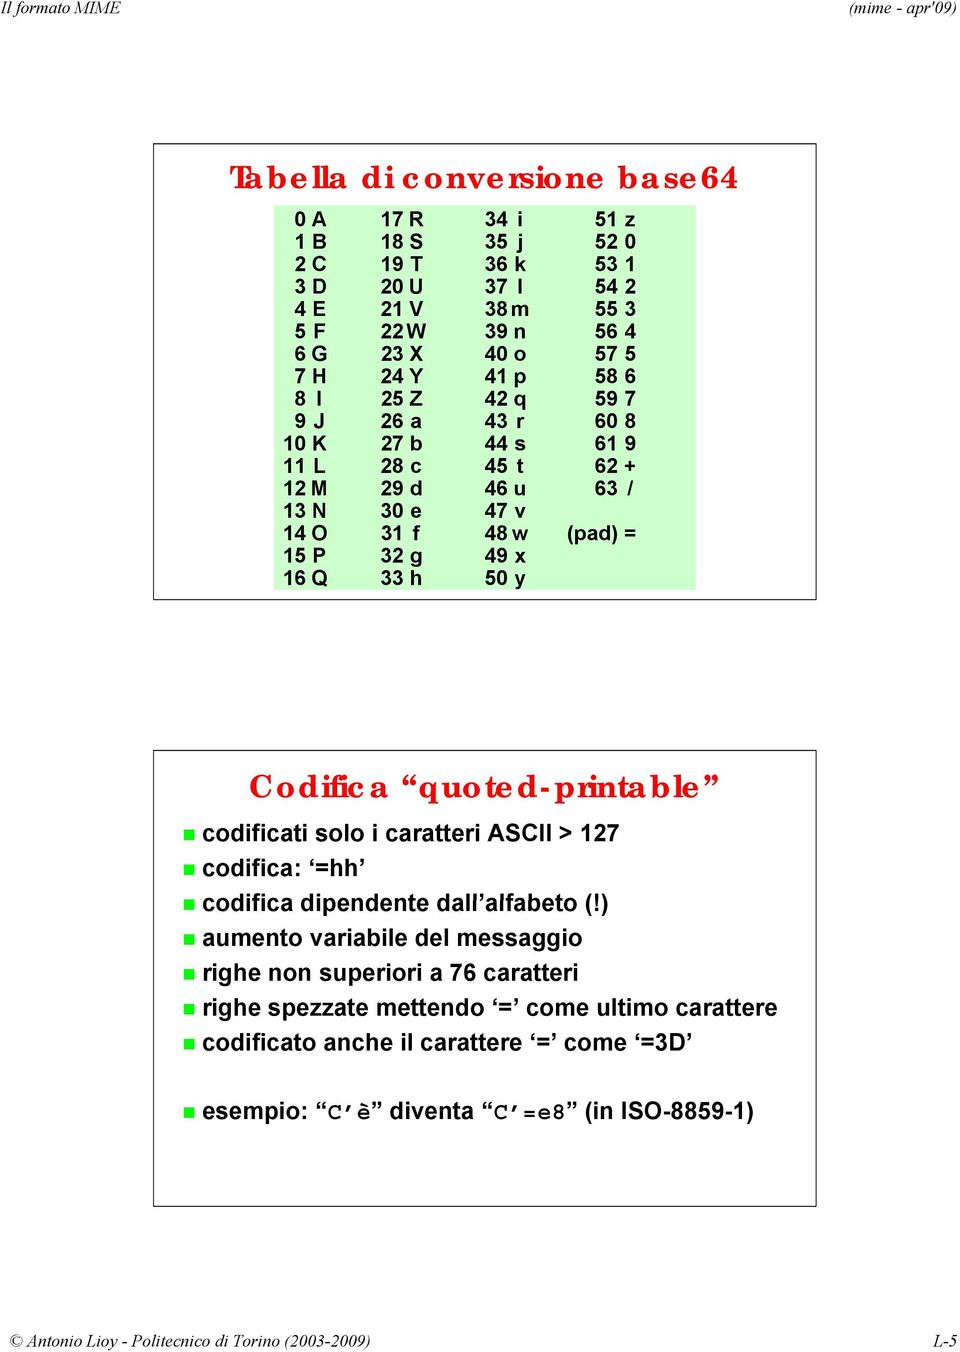 quoted-printable codificati solo i caratteri ASCII > 127 codifica: =hh codifica dipendente dall alfabeto (!